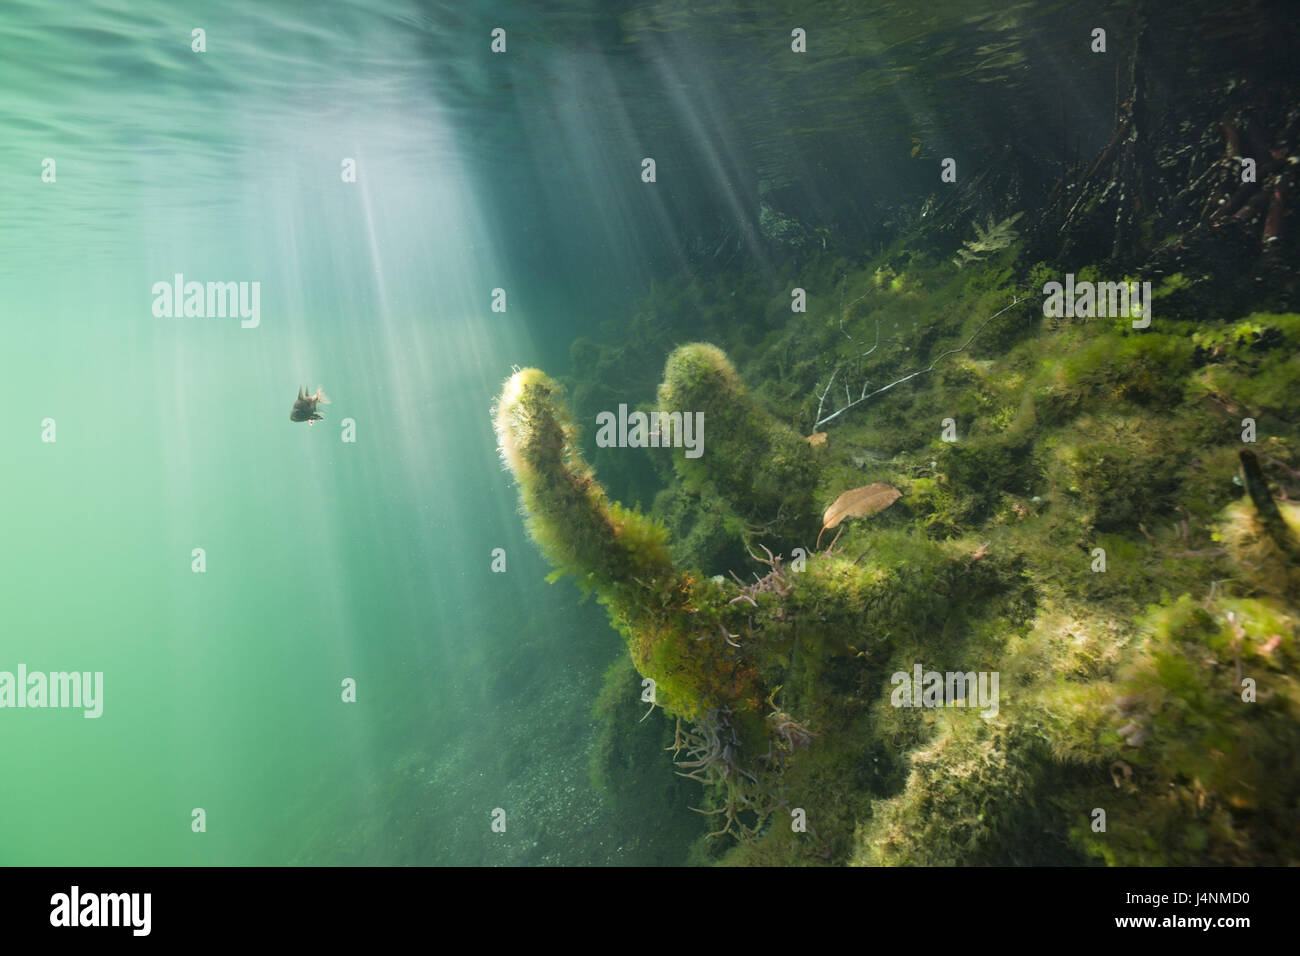 Underwater recording, sunrays, fish, moss, shore, Stock Photo